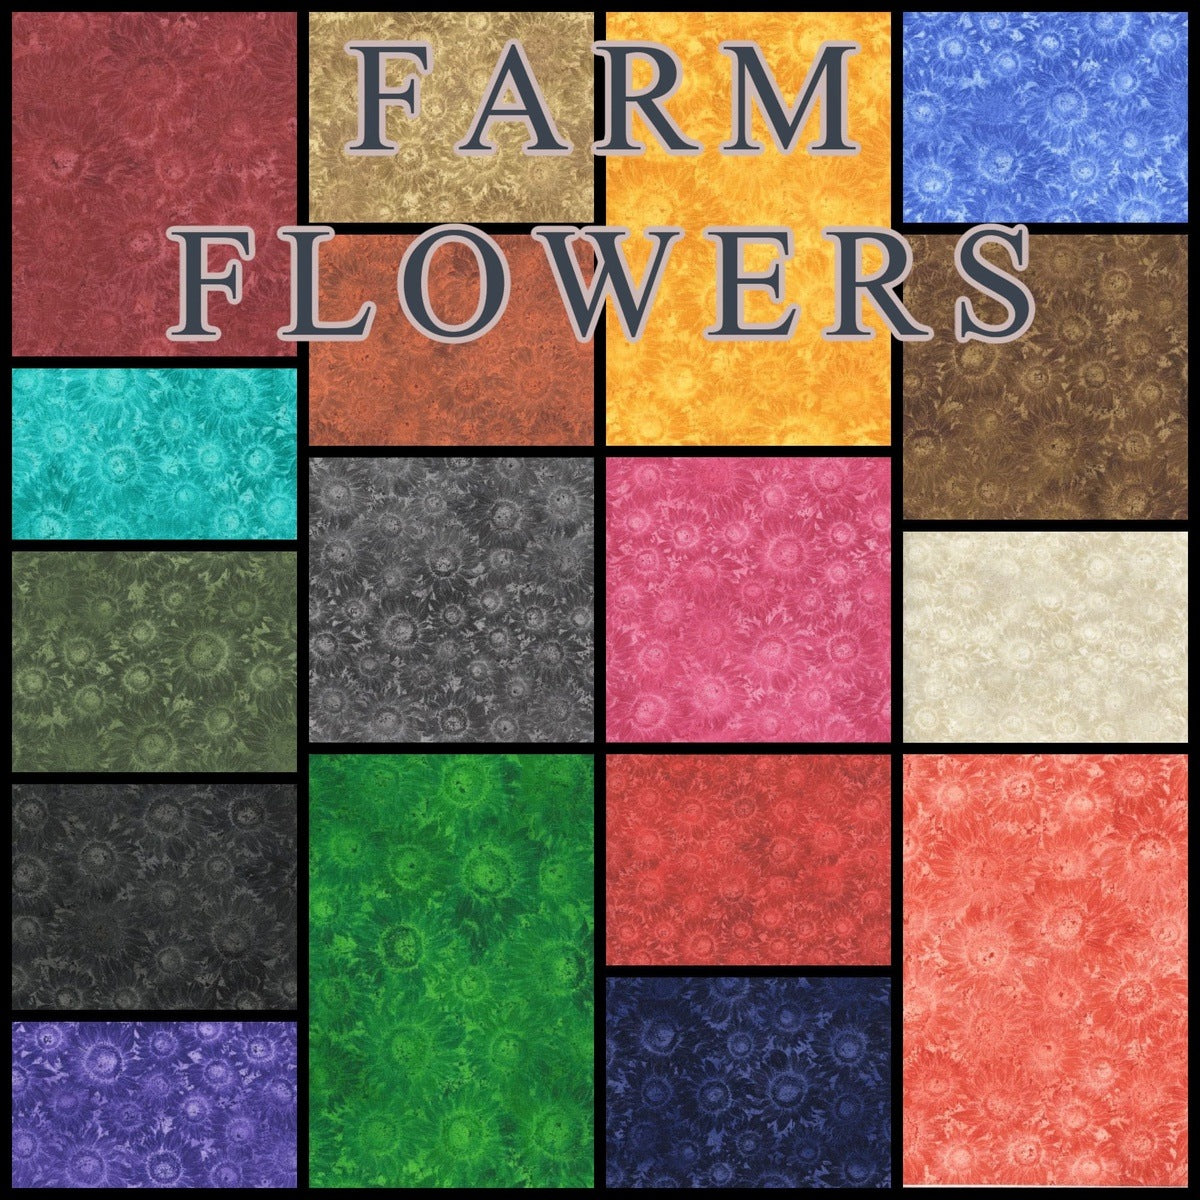 102 Farm Flowers pre cut charm pack 5" squares 100% cotton fabric quilt